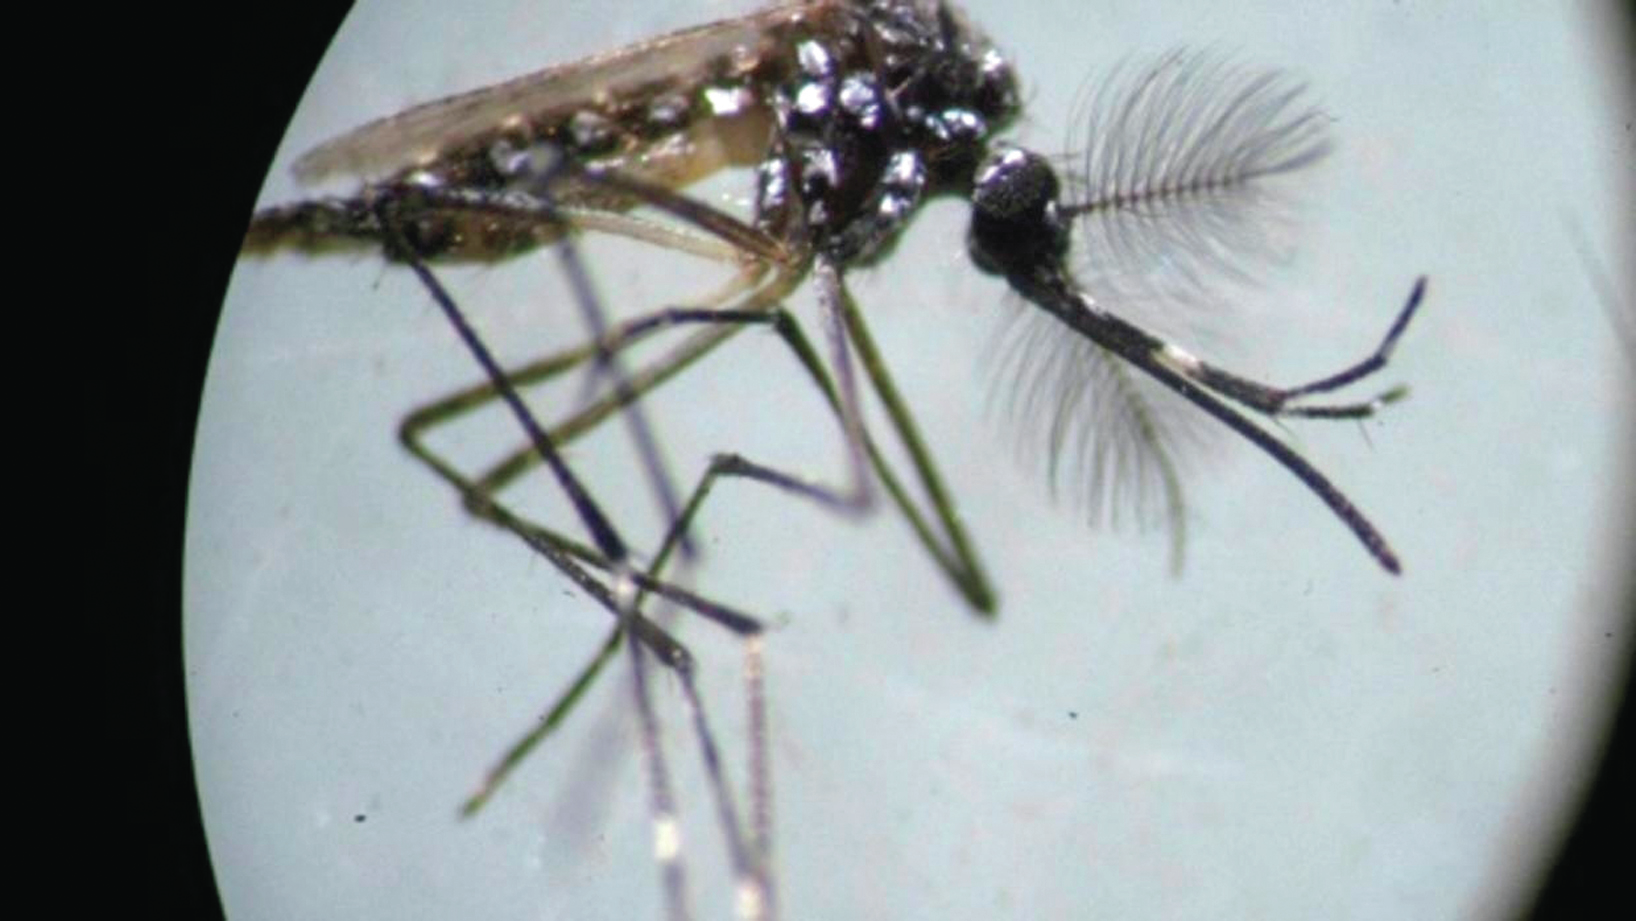 Dengue. Investigadores falam em descoberta “muito entusiasmante”